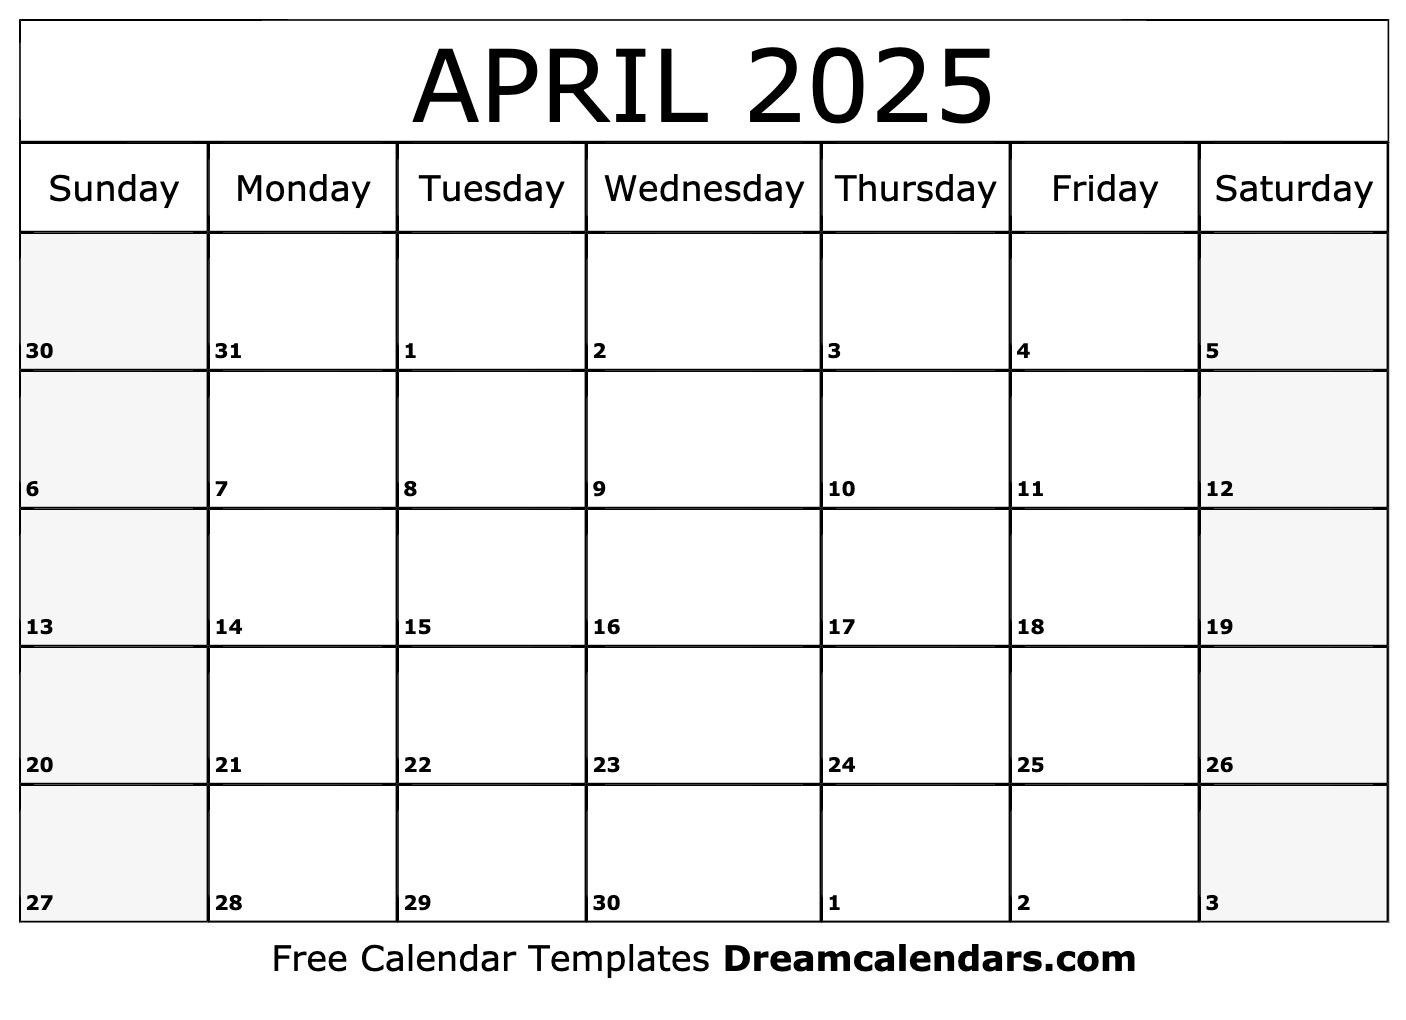 Easter 2025 Calendar Pdf - myra courtney